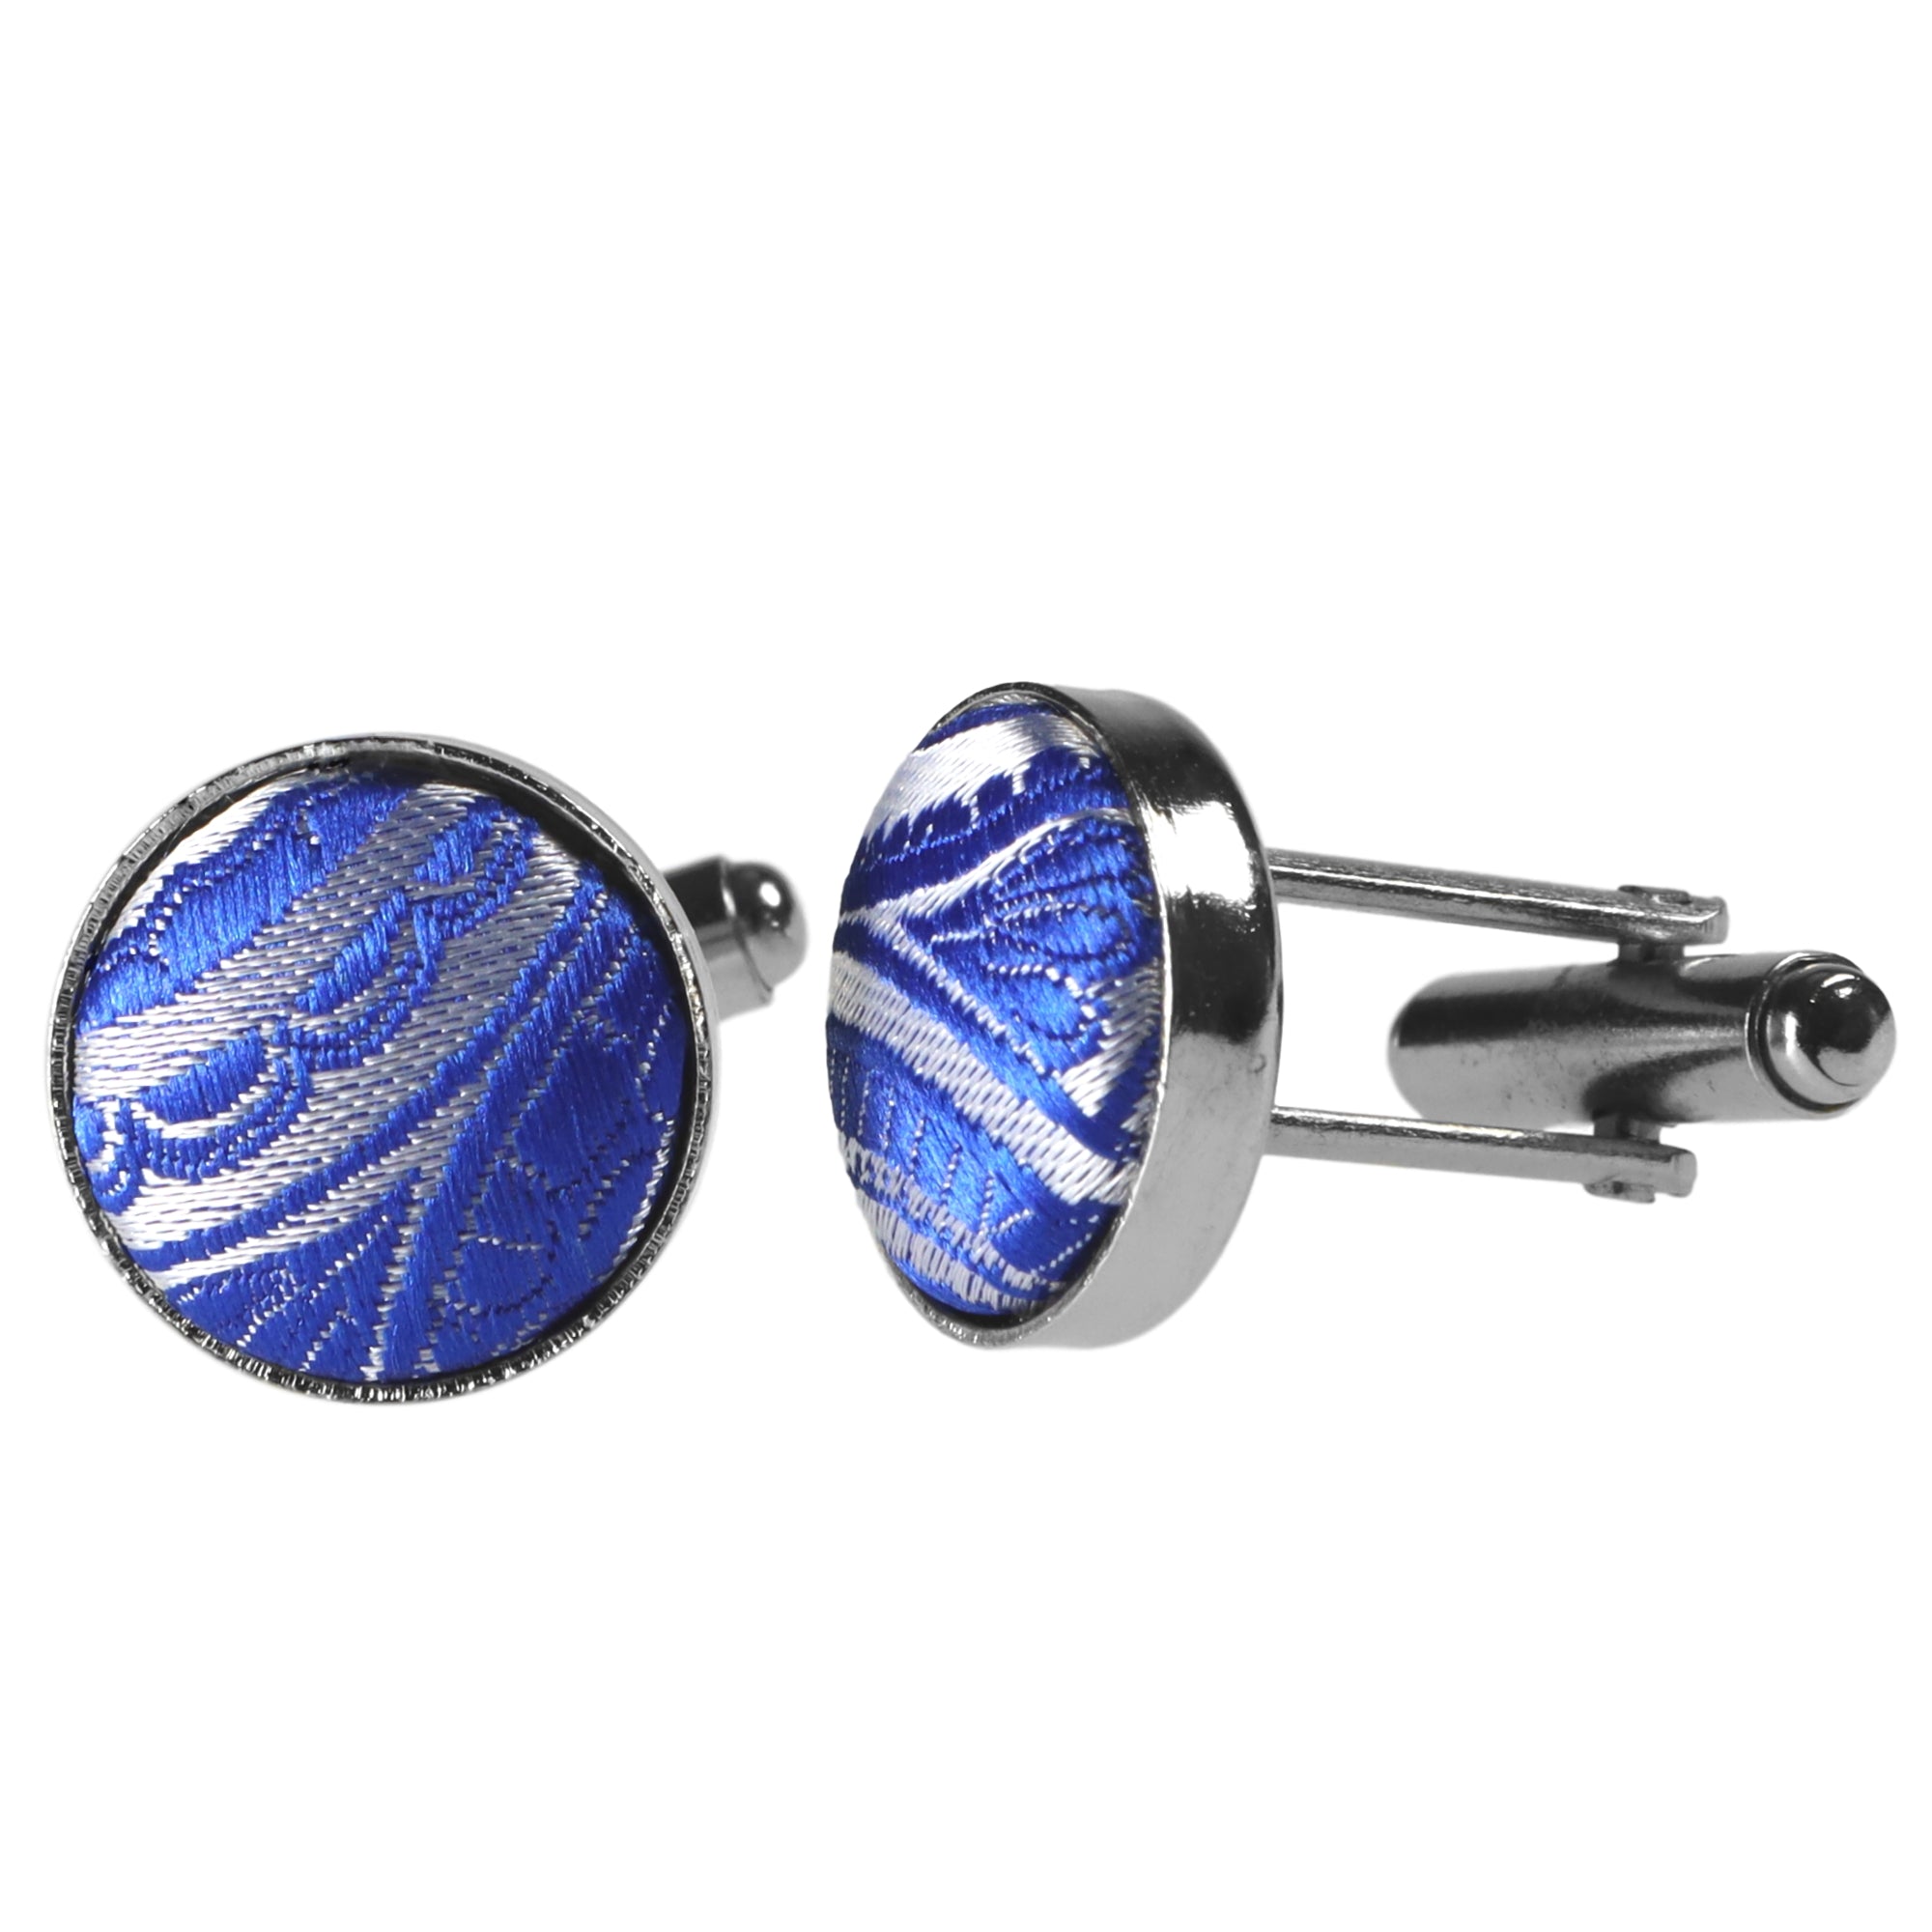 Sie Silber-Blaue designt GASSANI Kaufen GASSANIshop.de Paisley-Krawatte für | Krawatten -